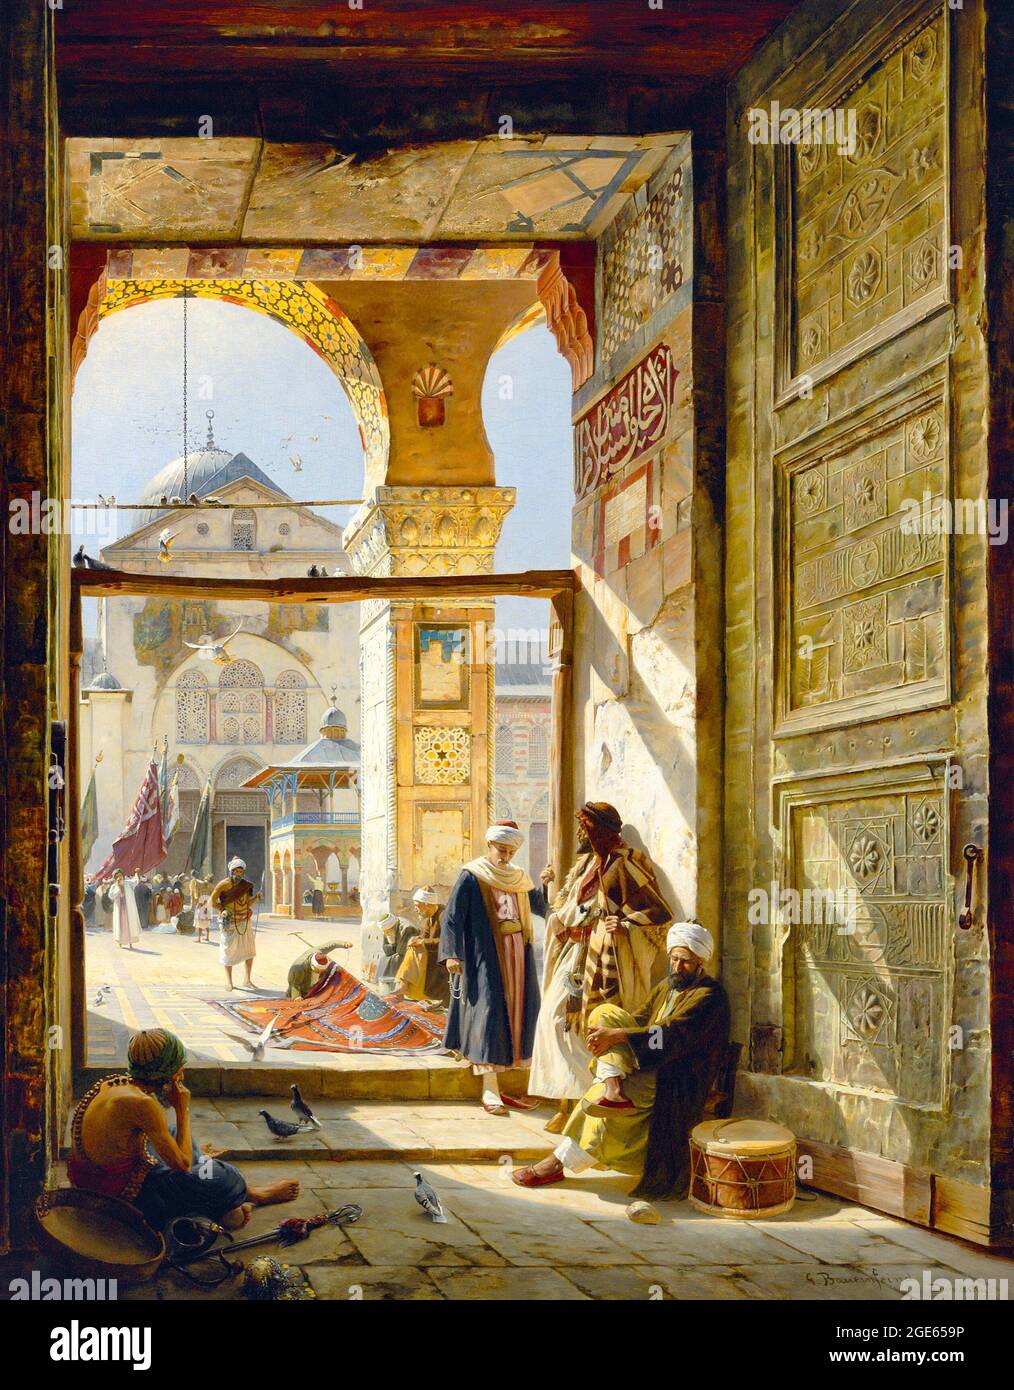 Siria: La porta della Grande Moschea Umayyyyyad, Damasco. Dipinto di Gustav Bauernfeind (1848-1904), 1890. Gustav Bauernfeind (Sulz am Neckar, 4 settembre 1848 – Gerusalemme, 24 dicembre 1904) è stato un . È considerato uno dei più notevoli pittori orientalisti della Germania. Foto Stock